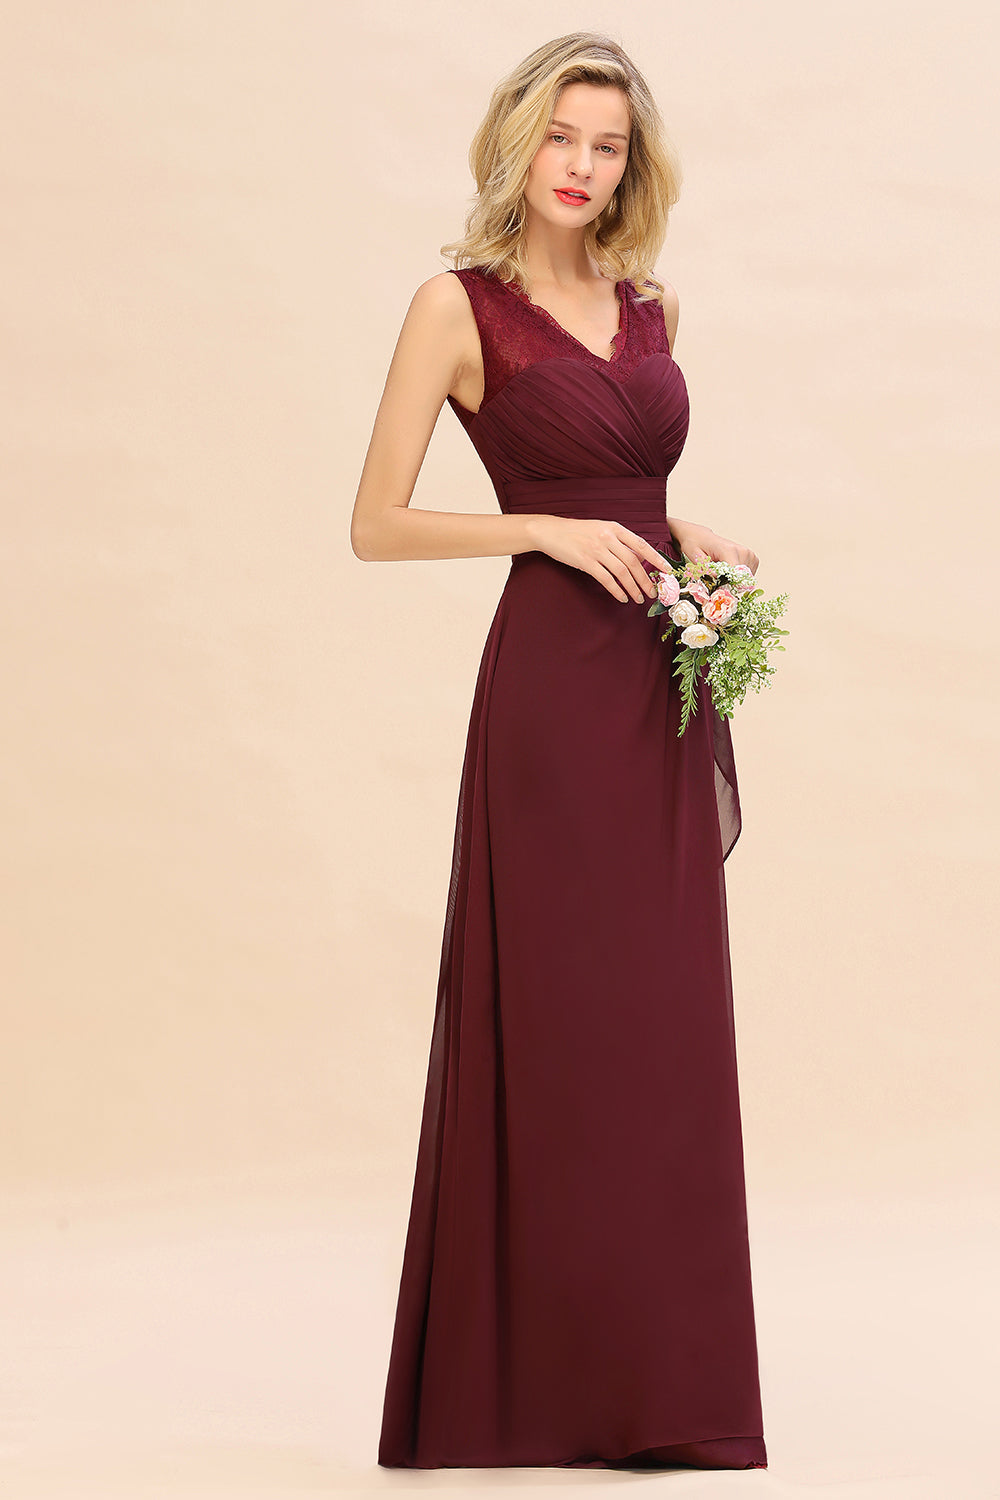 Elegant Lace V-Neck Burgundy Chiffon Bridesmaid Dresses with Ruffle